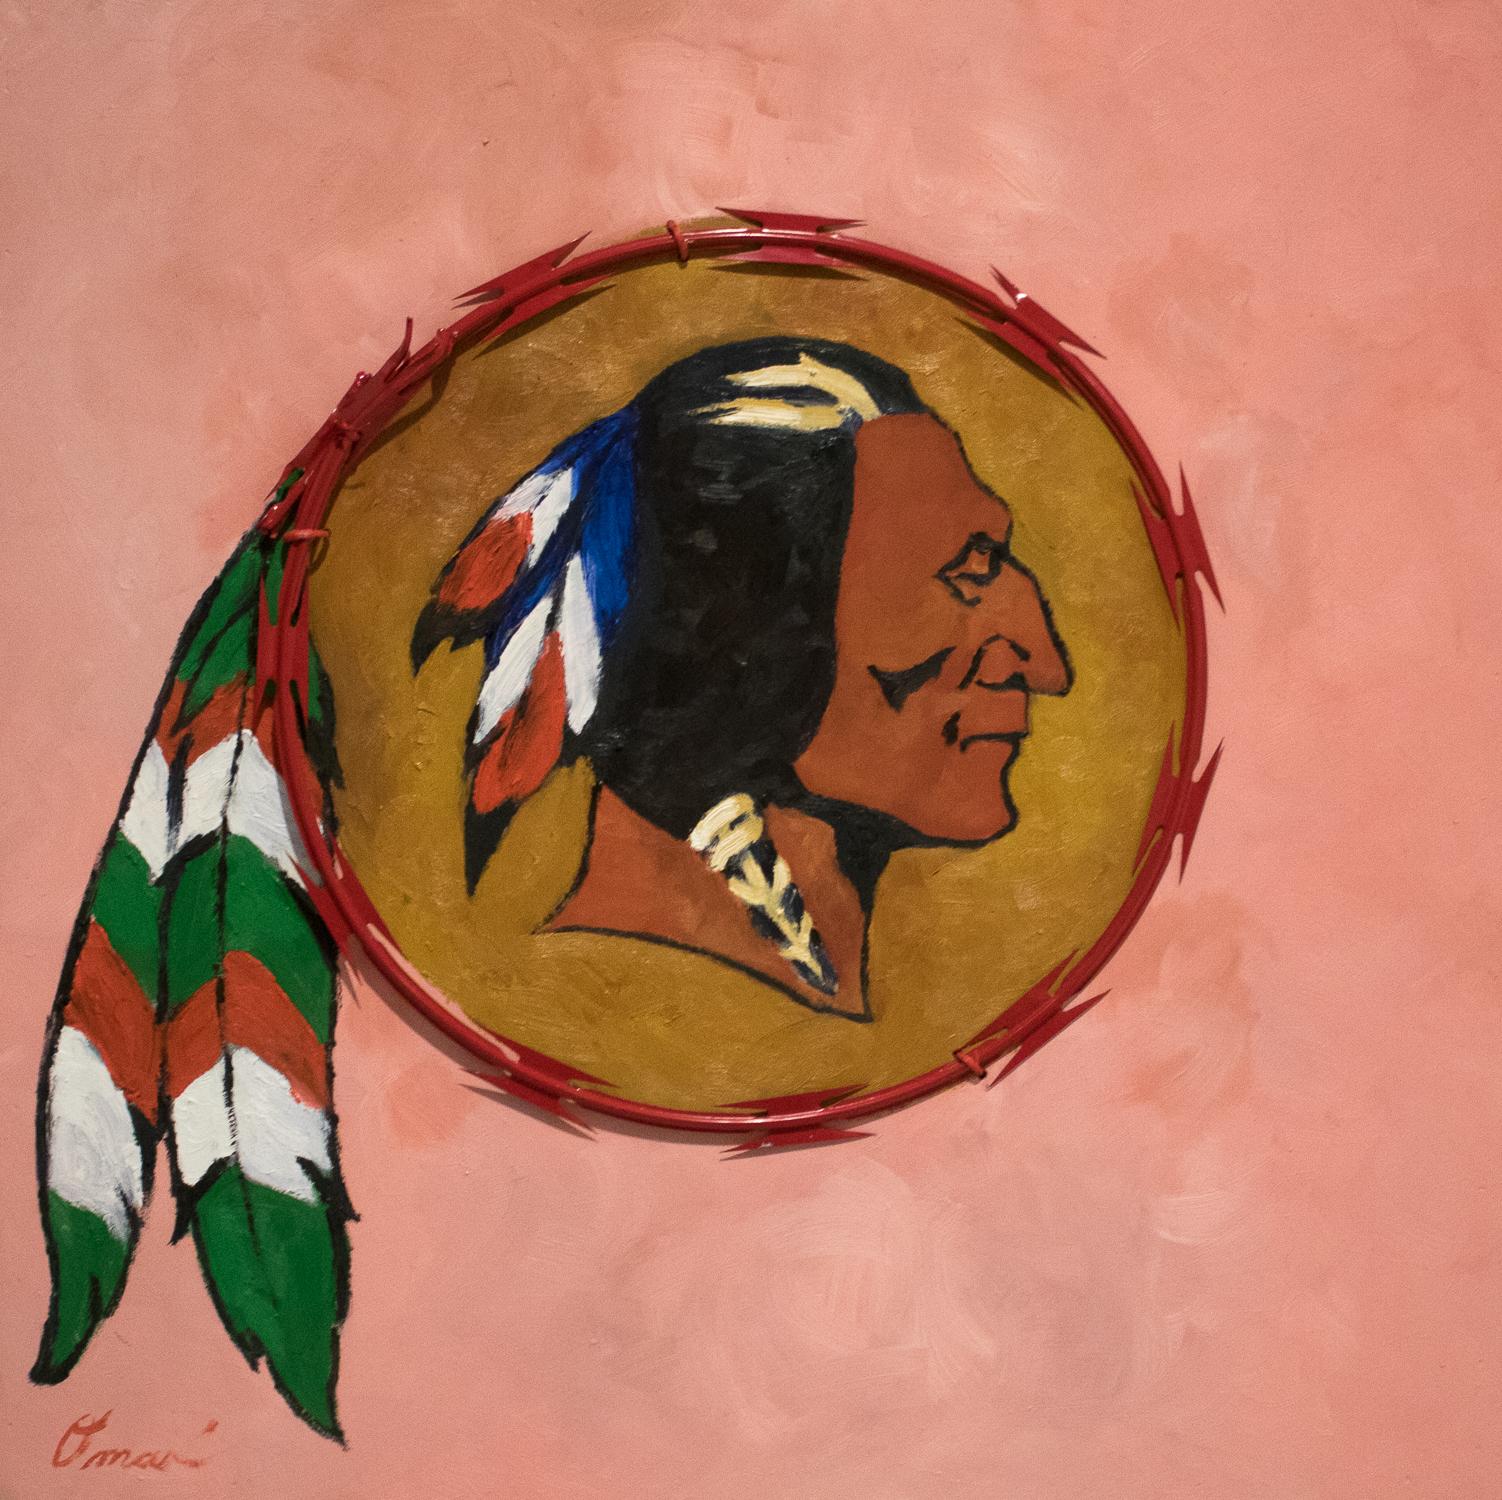 REDSKIN - peinture politique contemporaine, rose, fil de rasoir rouge, chef autochtones